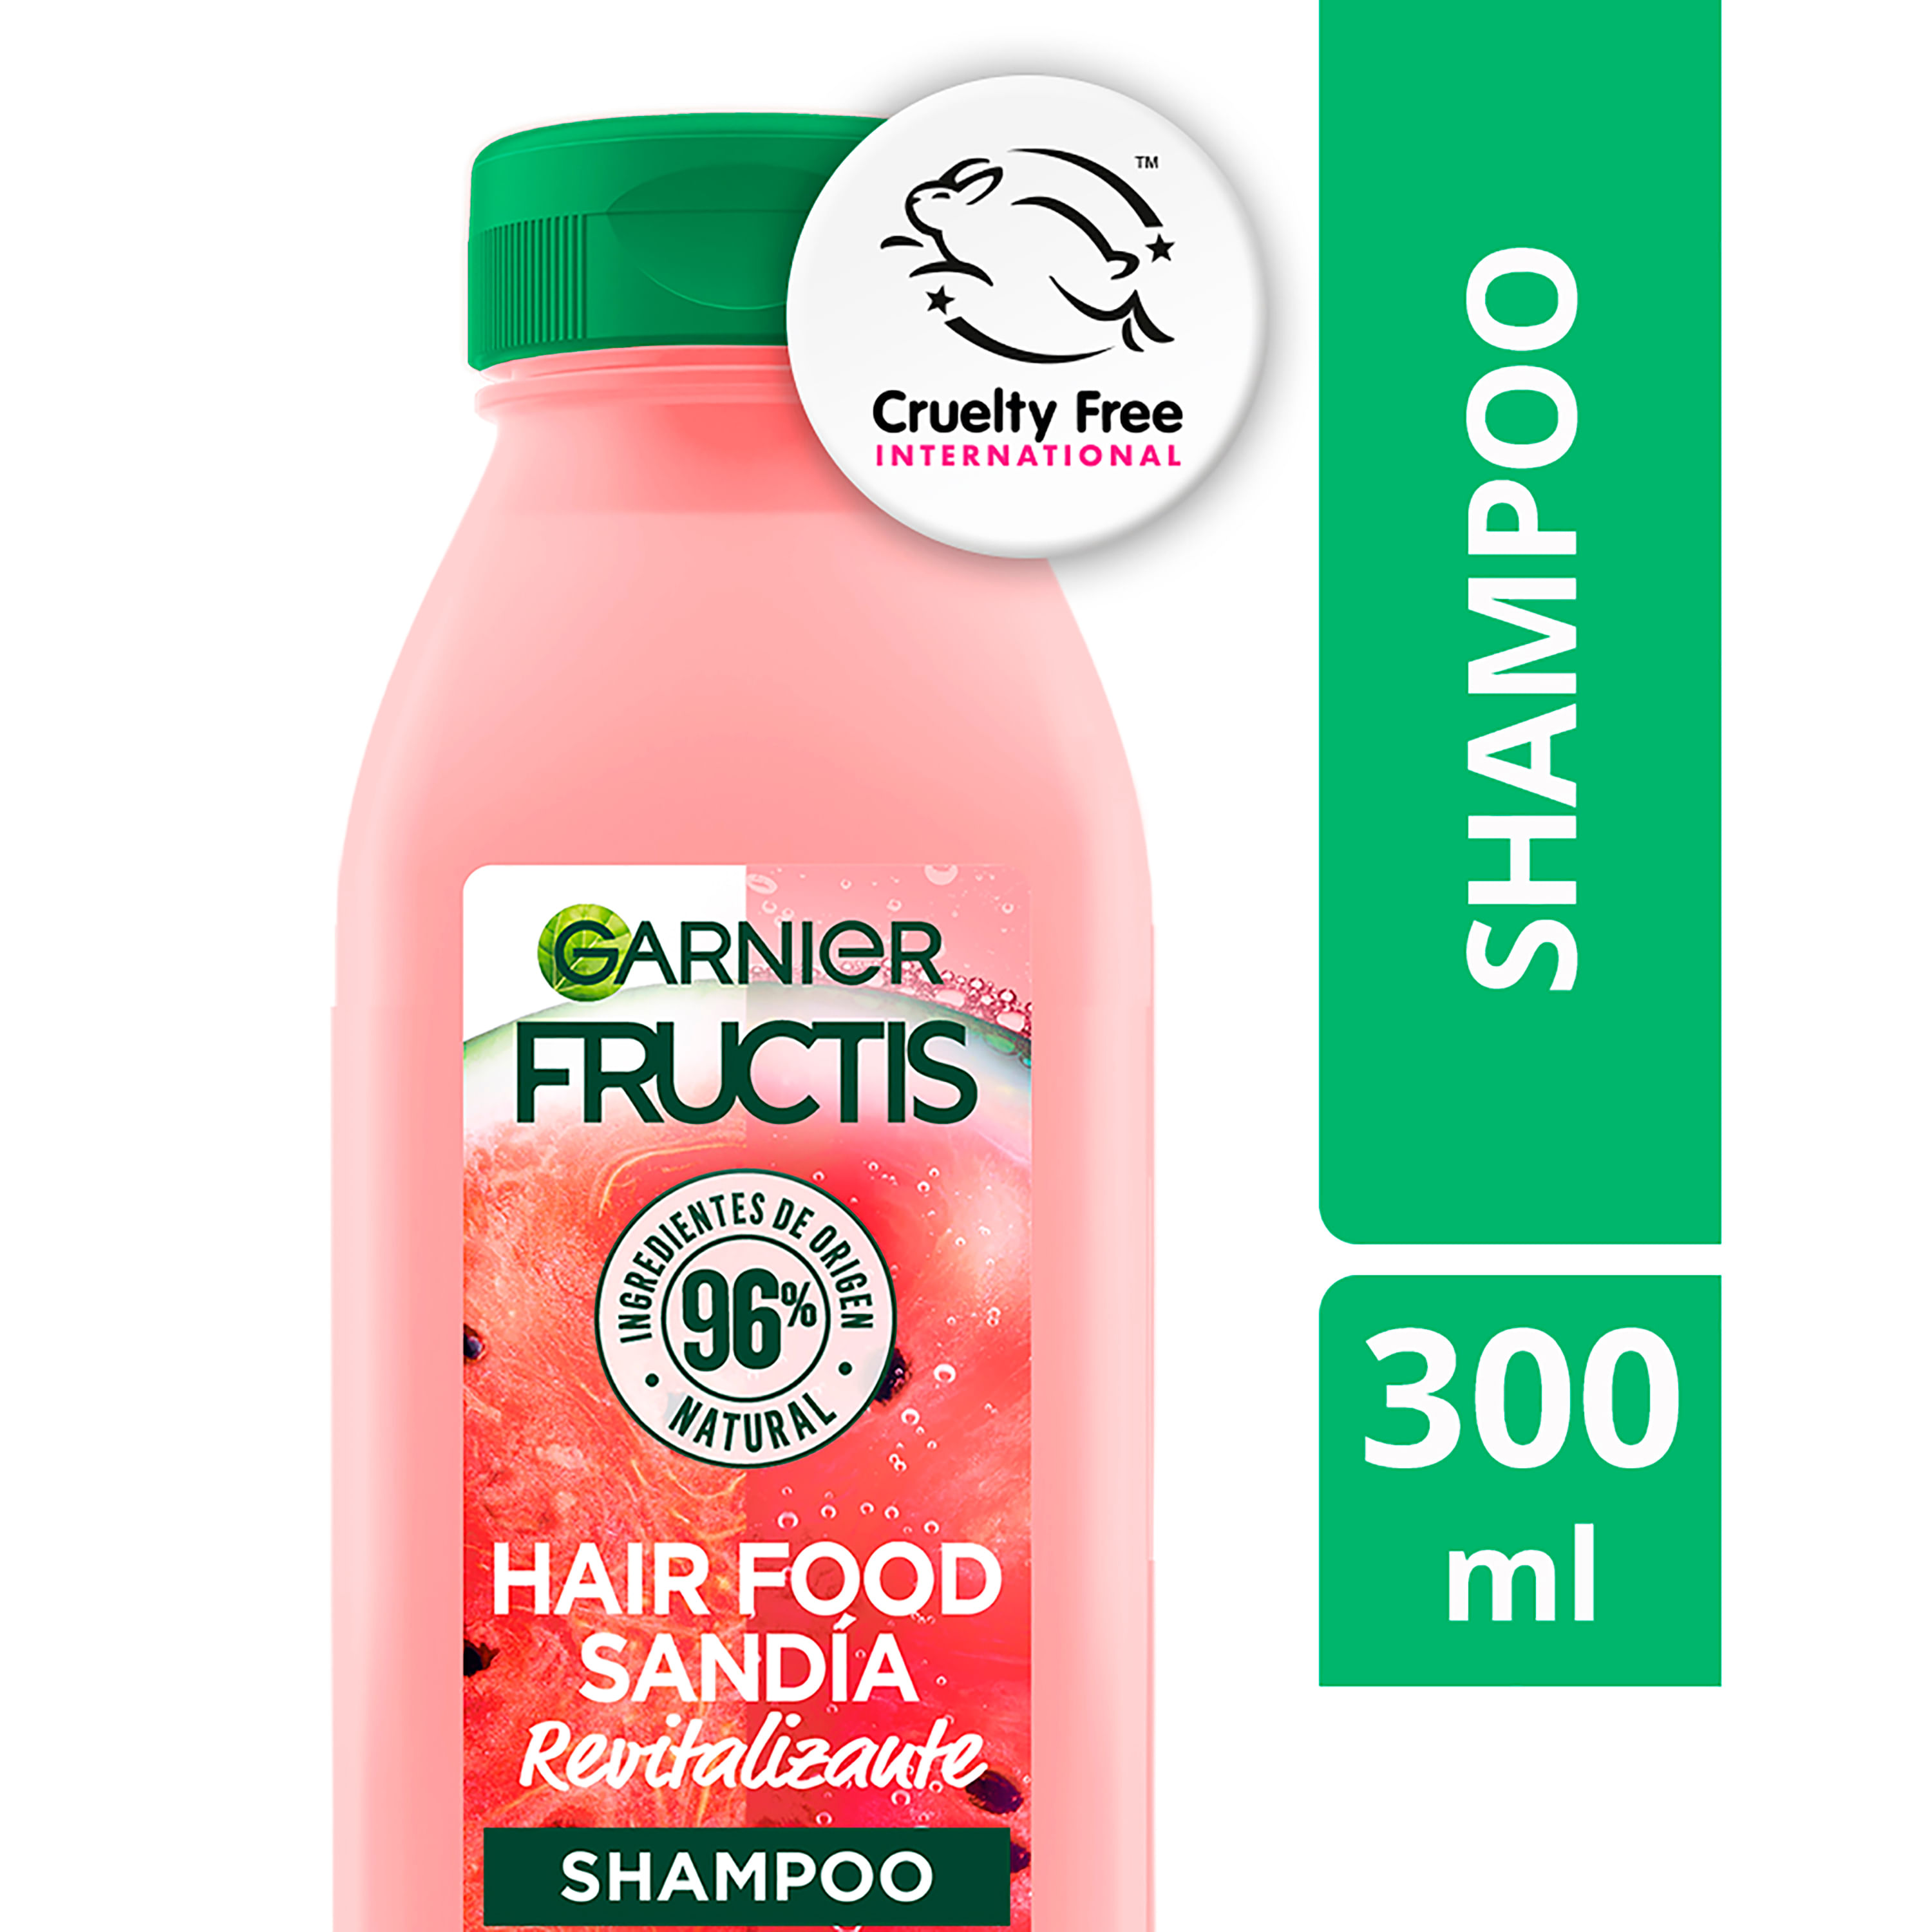 Shampo-Fructis-Hair-Food-Sandia-300ml-1-18989